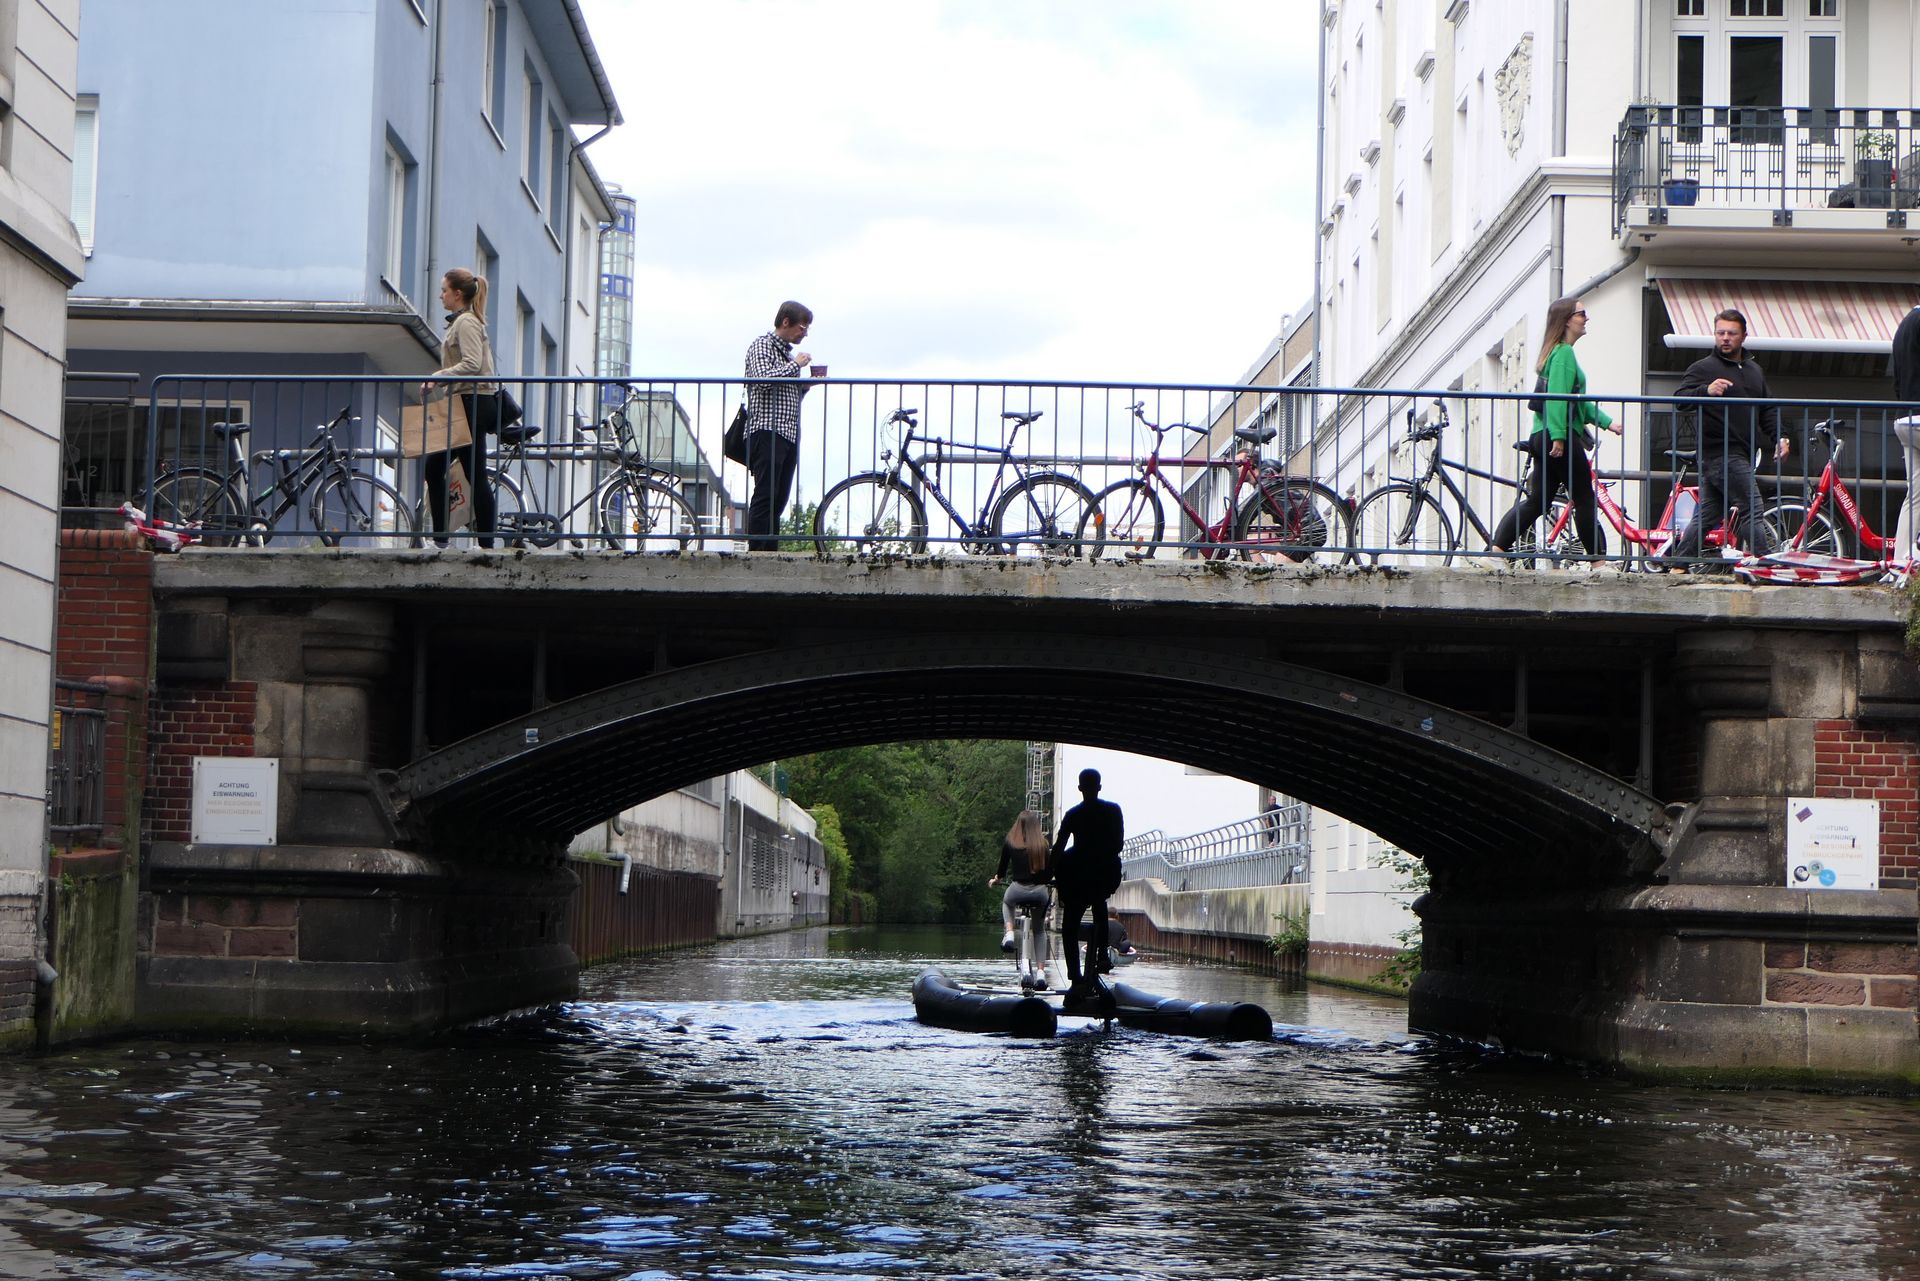 Rowerzystów w Hamburgu można spotkać praktycznie wszędzie. Na zdjęciach nowa forma przemieszczania się po wodzie, czyli prawdziwie wodny rower.